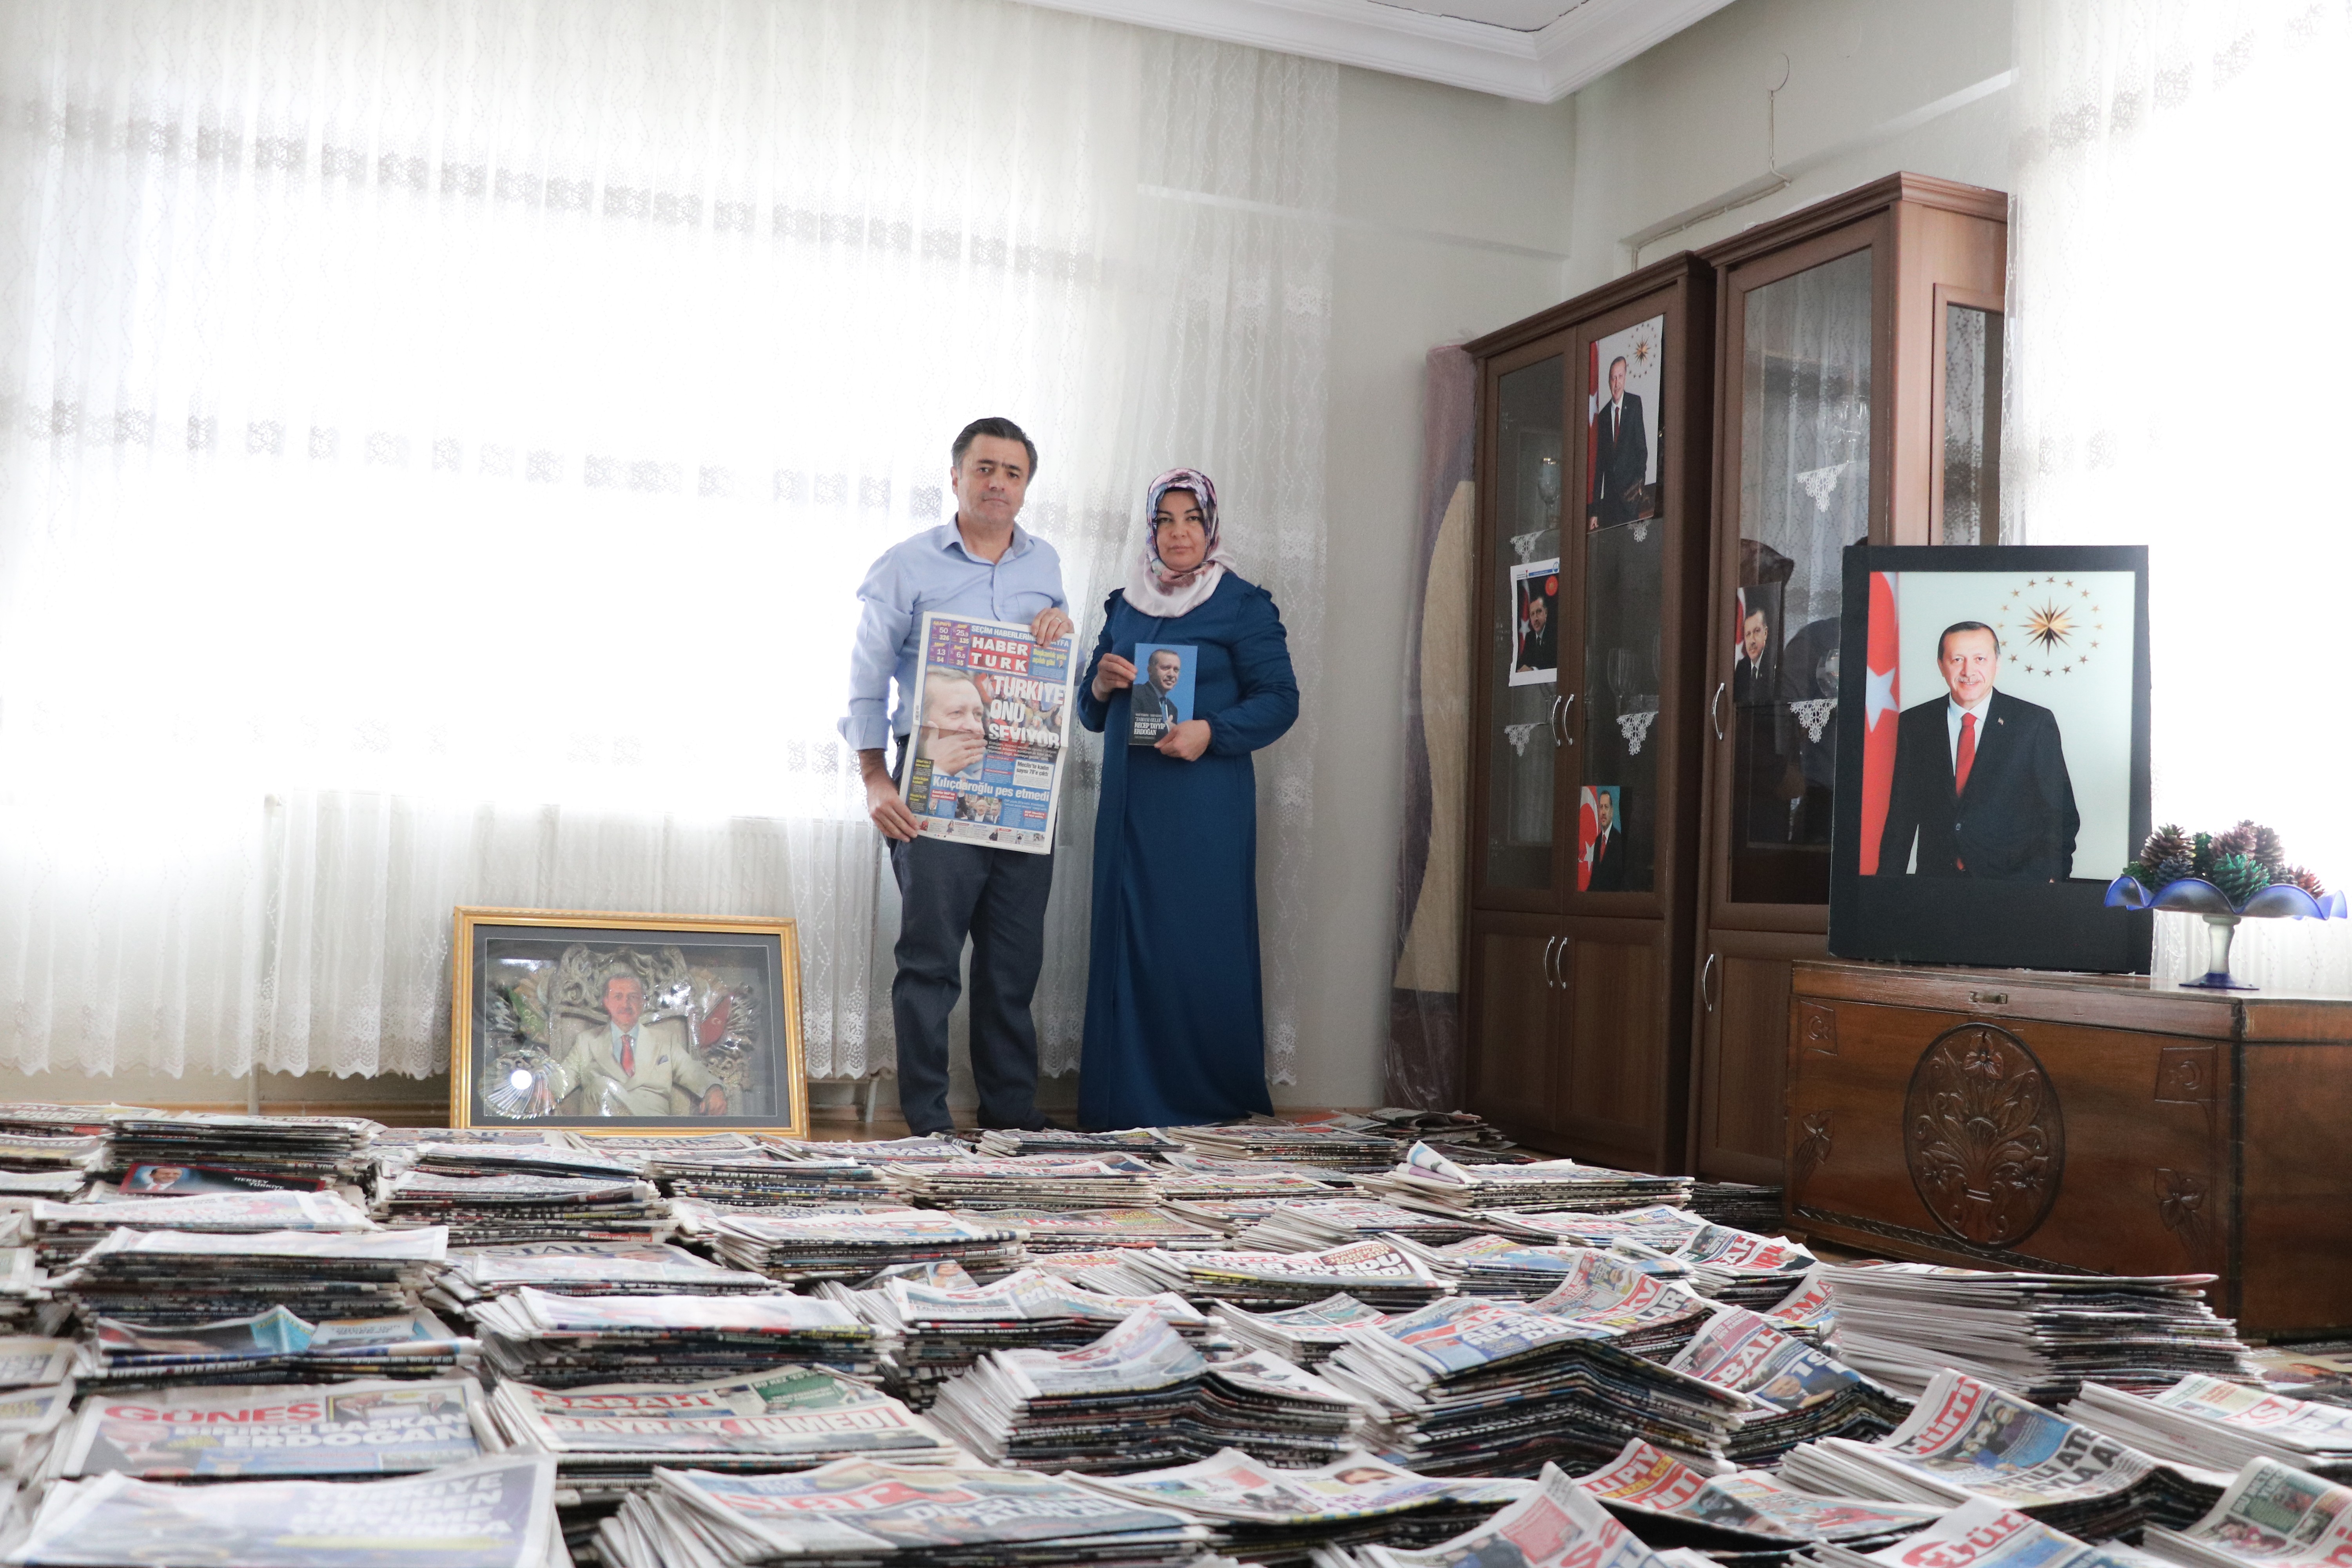 Kahramanmaraş’ta 20 yıldır Erdoğan arşivi yapıyor